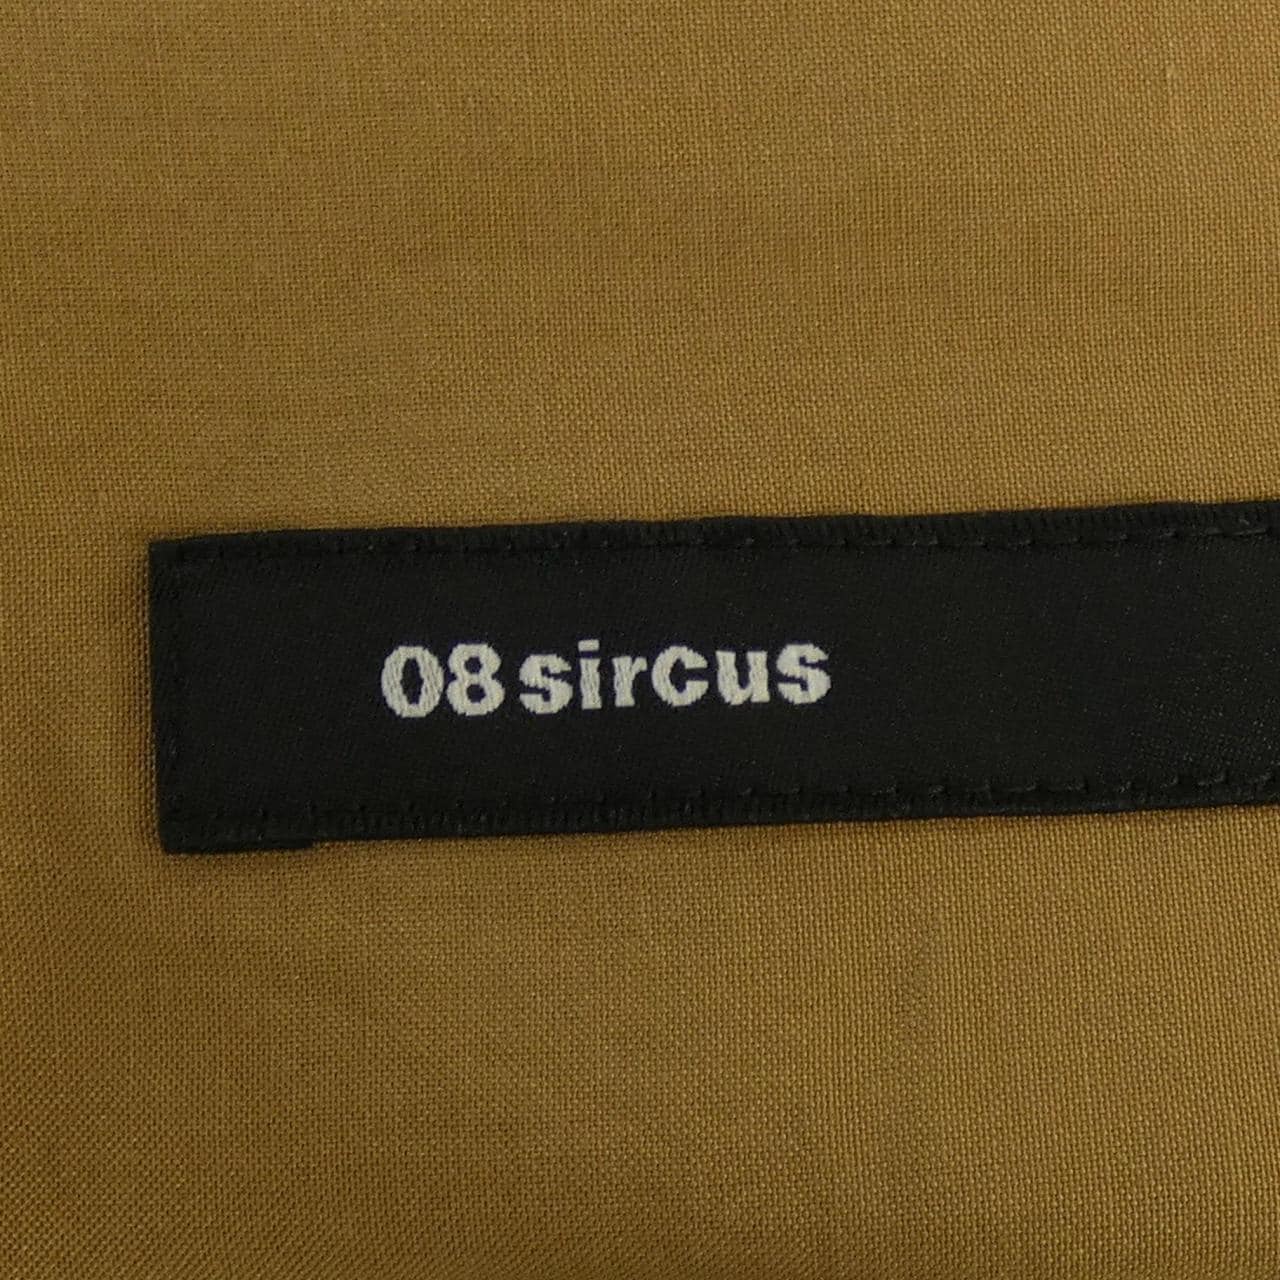 ゼロエイトサーカス 08 SIRCUS シャツ